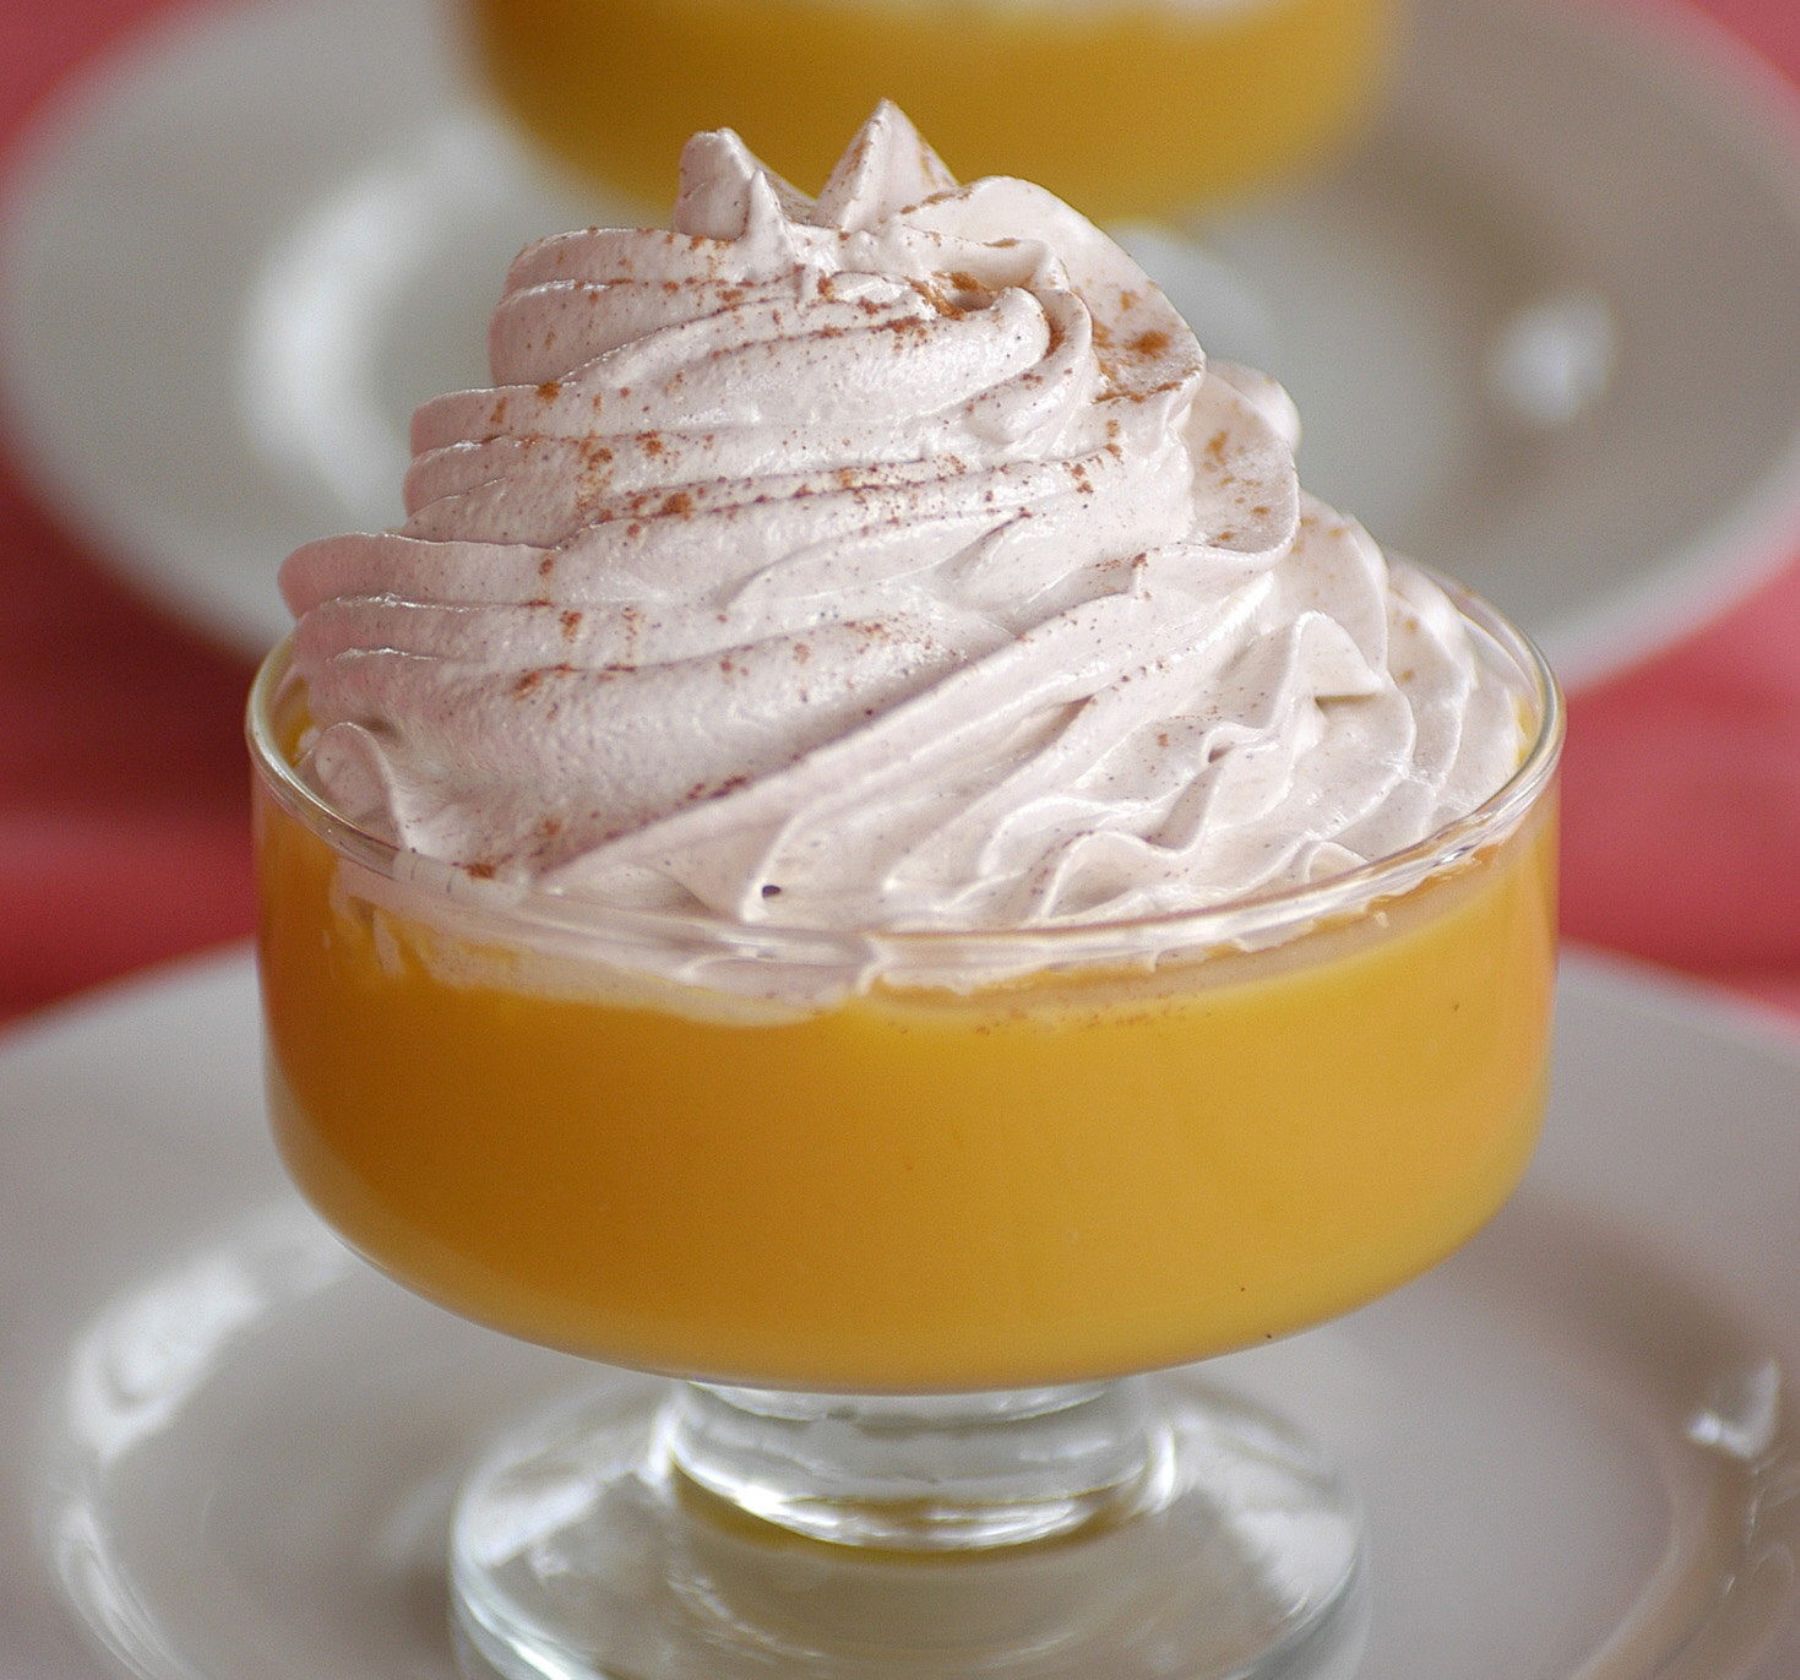 Photo of a Peruvian caramel custard-like dessert in a short stemmed dessert glass.